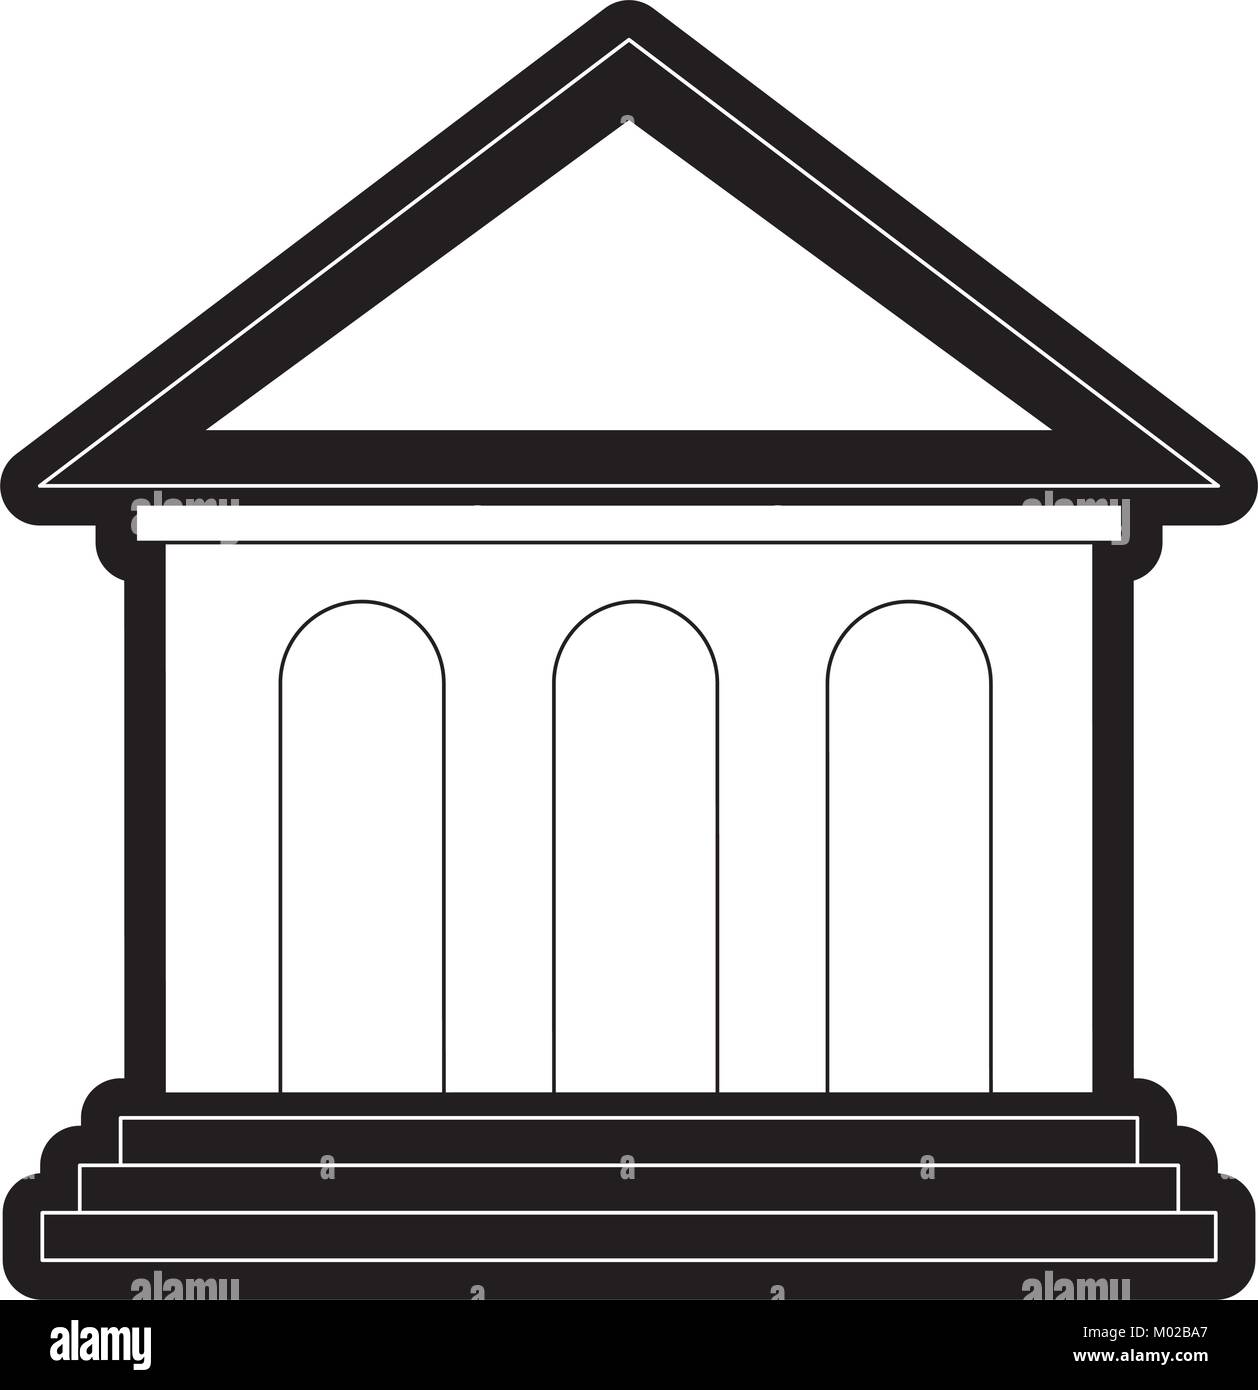 greek building design Stock Vector